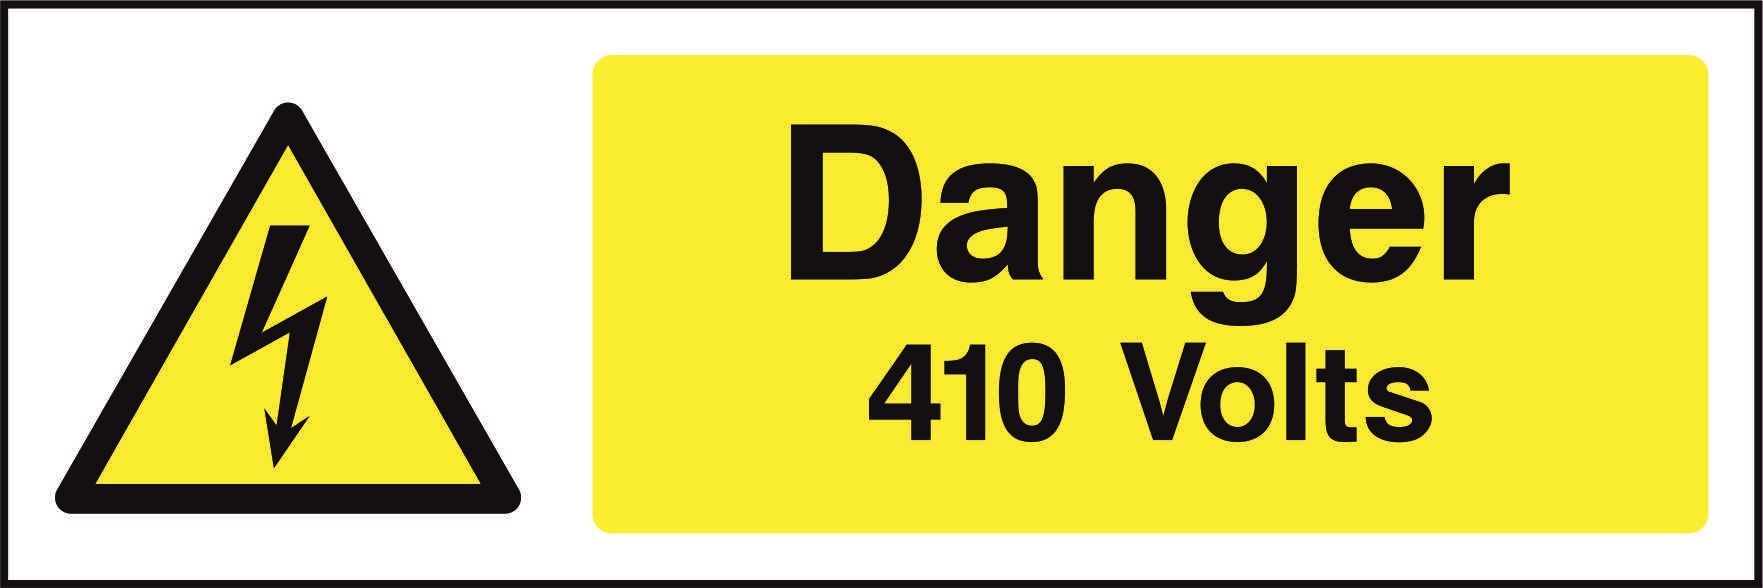 Danger 410 Volts